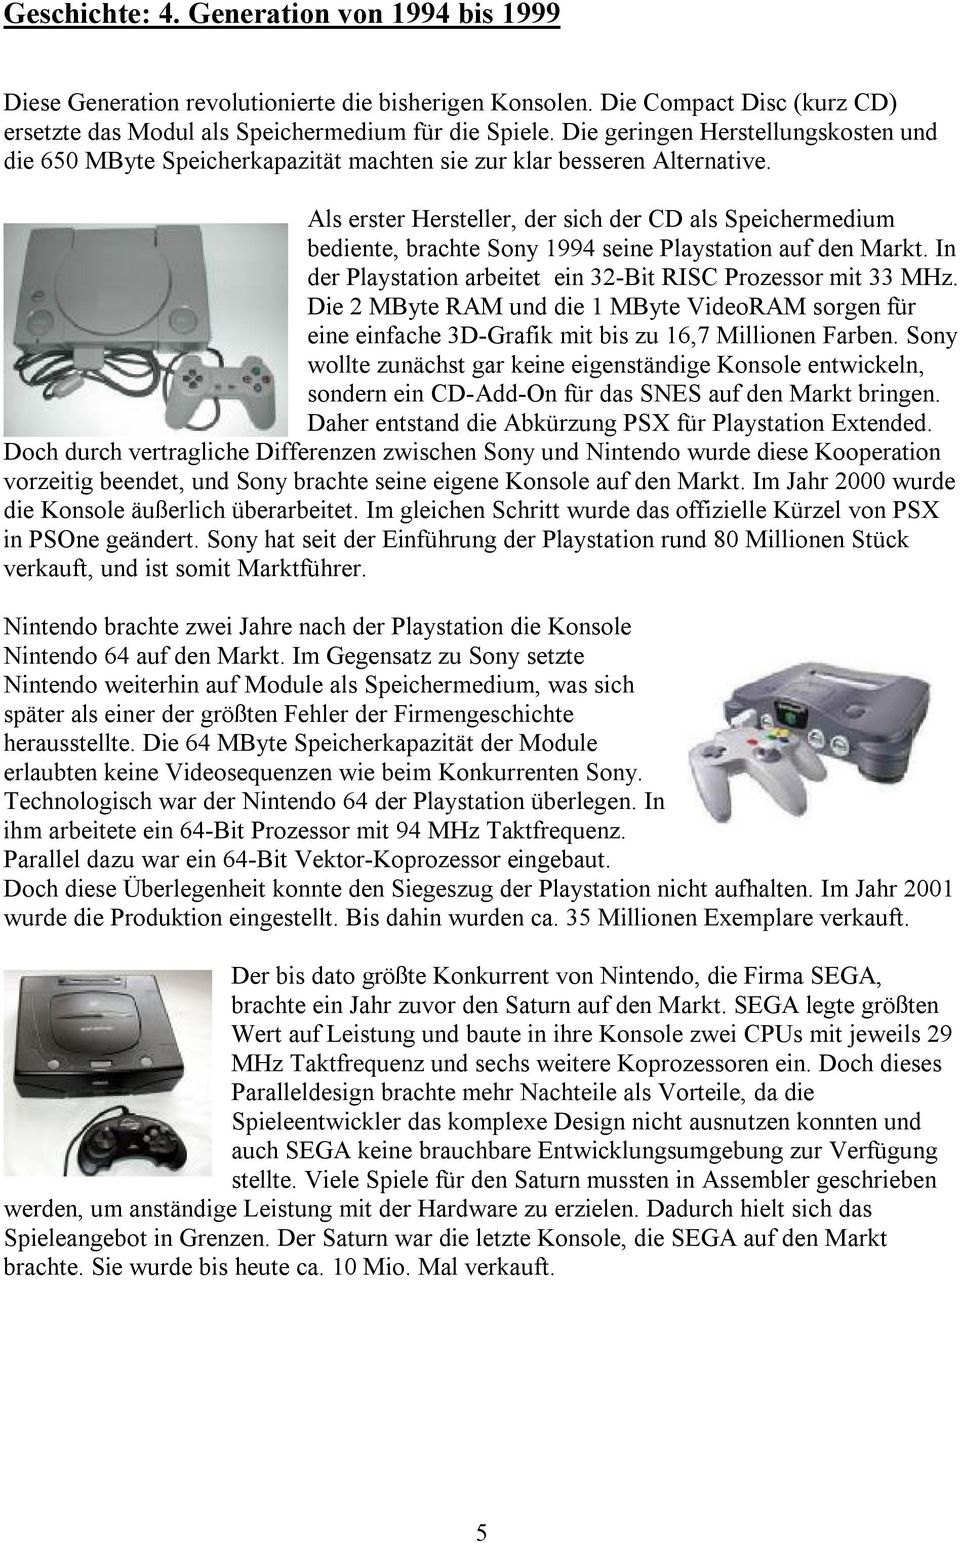 Als erster Hersteller, der sich der CD als Speichermedium bediente, brachte Sony 1994 seine Playstation auf den Markt. In der Playstation arbeitet ein 32-Bit RISC Prozessor mit 33 MHz.